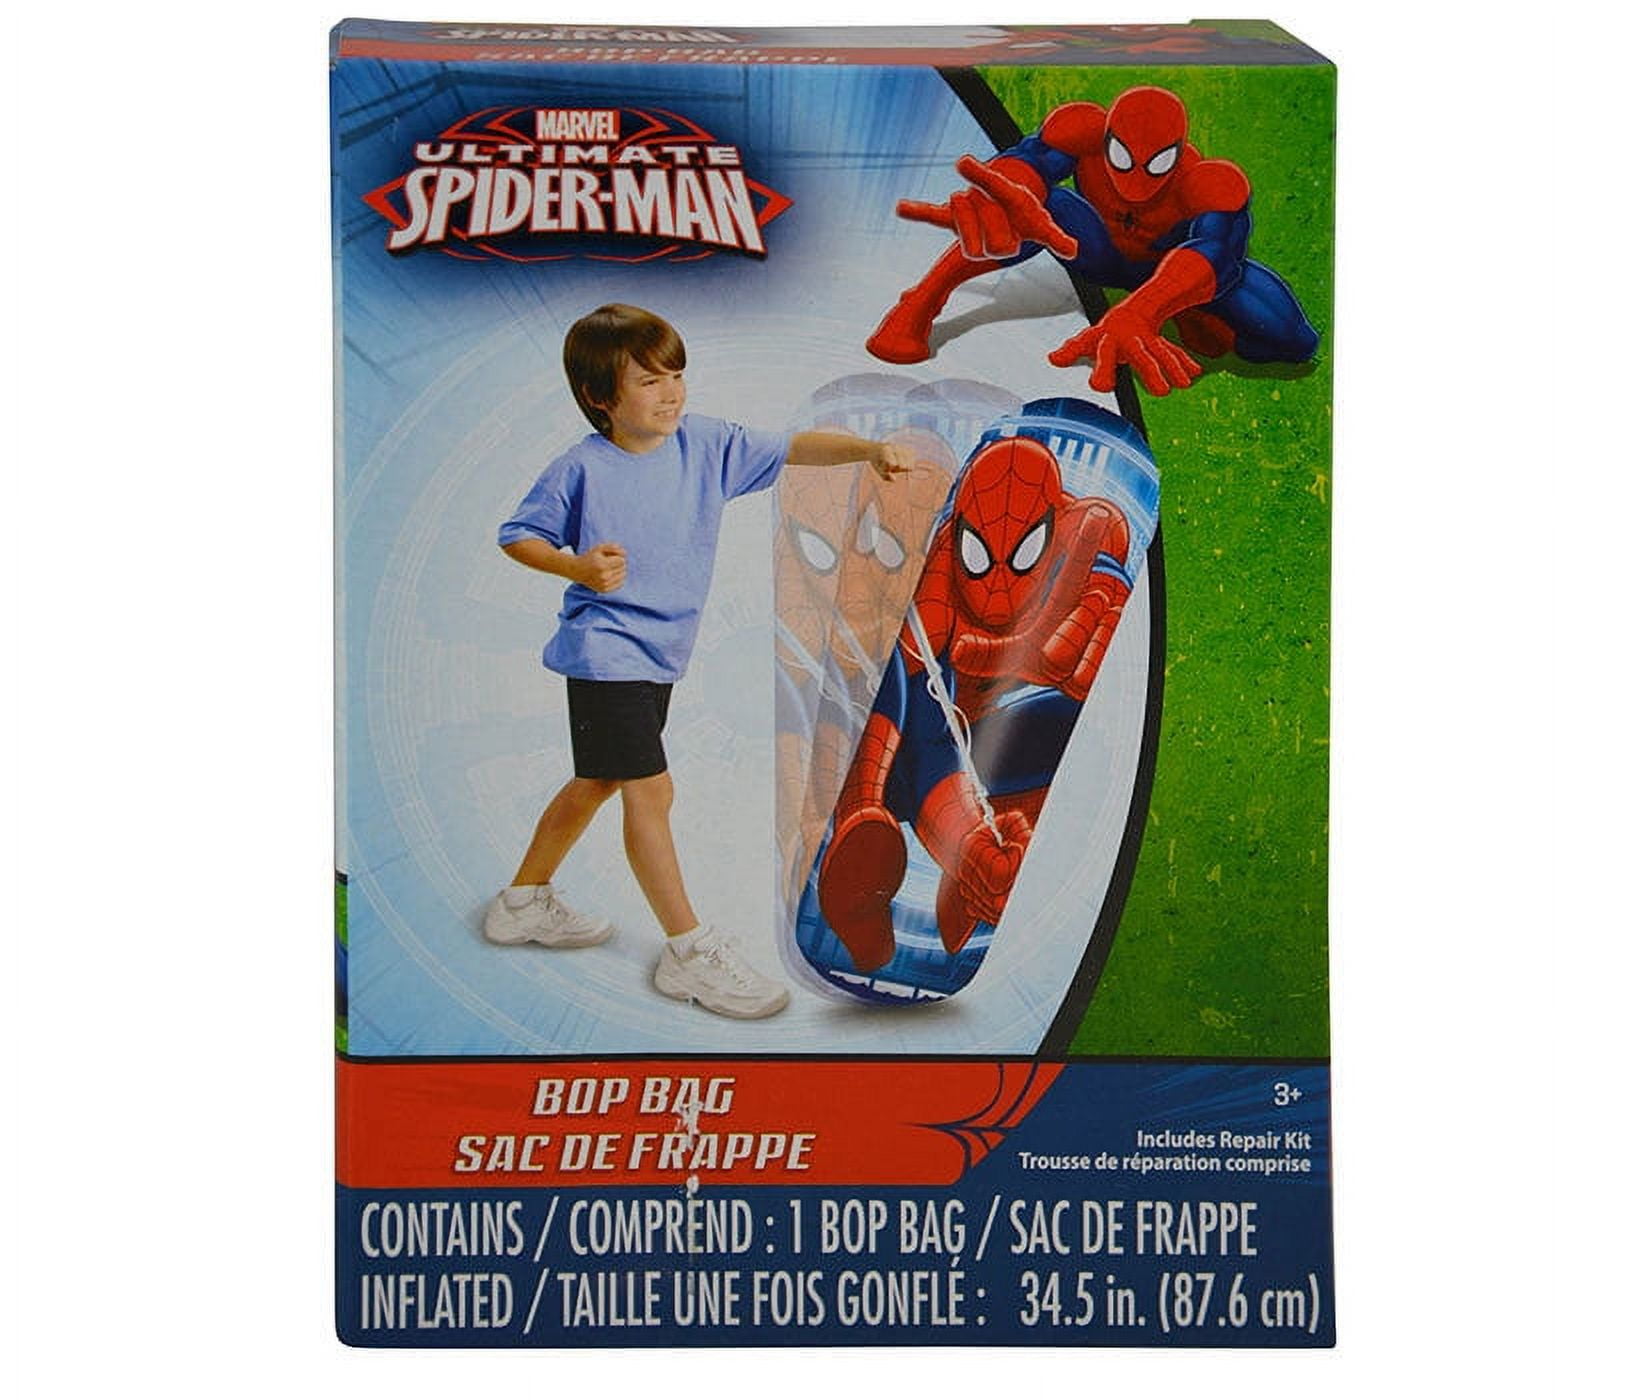 Sac de frappe gonflable Spiderman pour enfants • Fight Zone